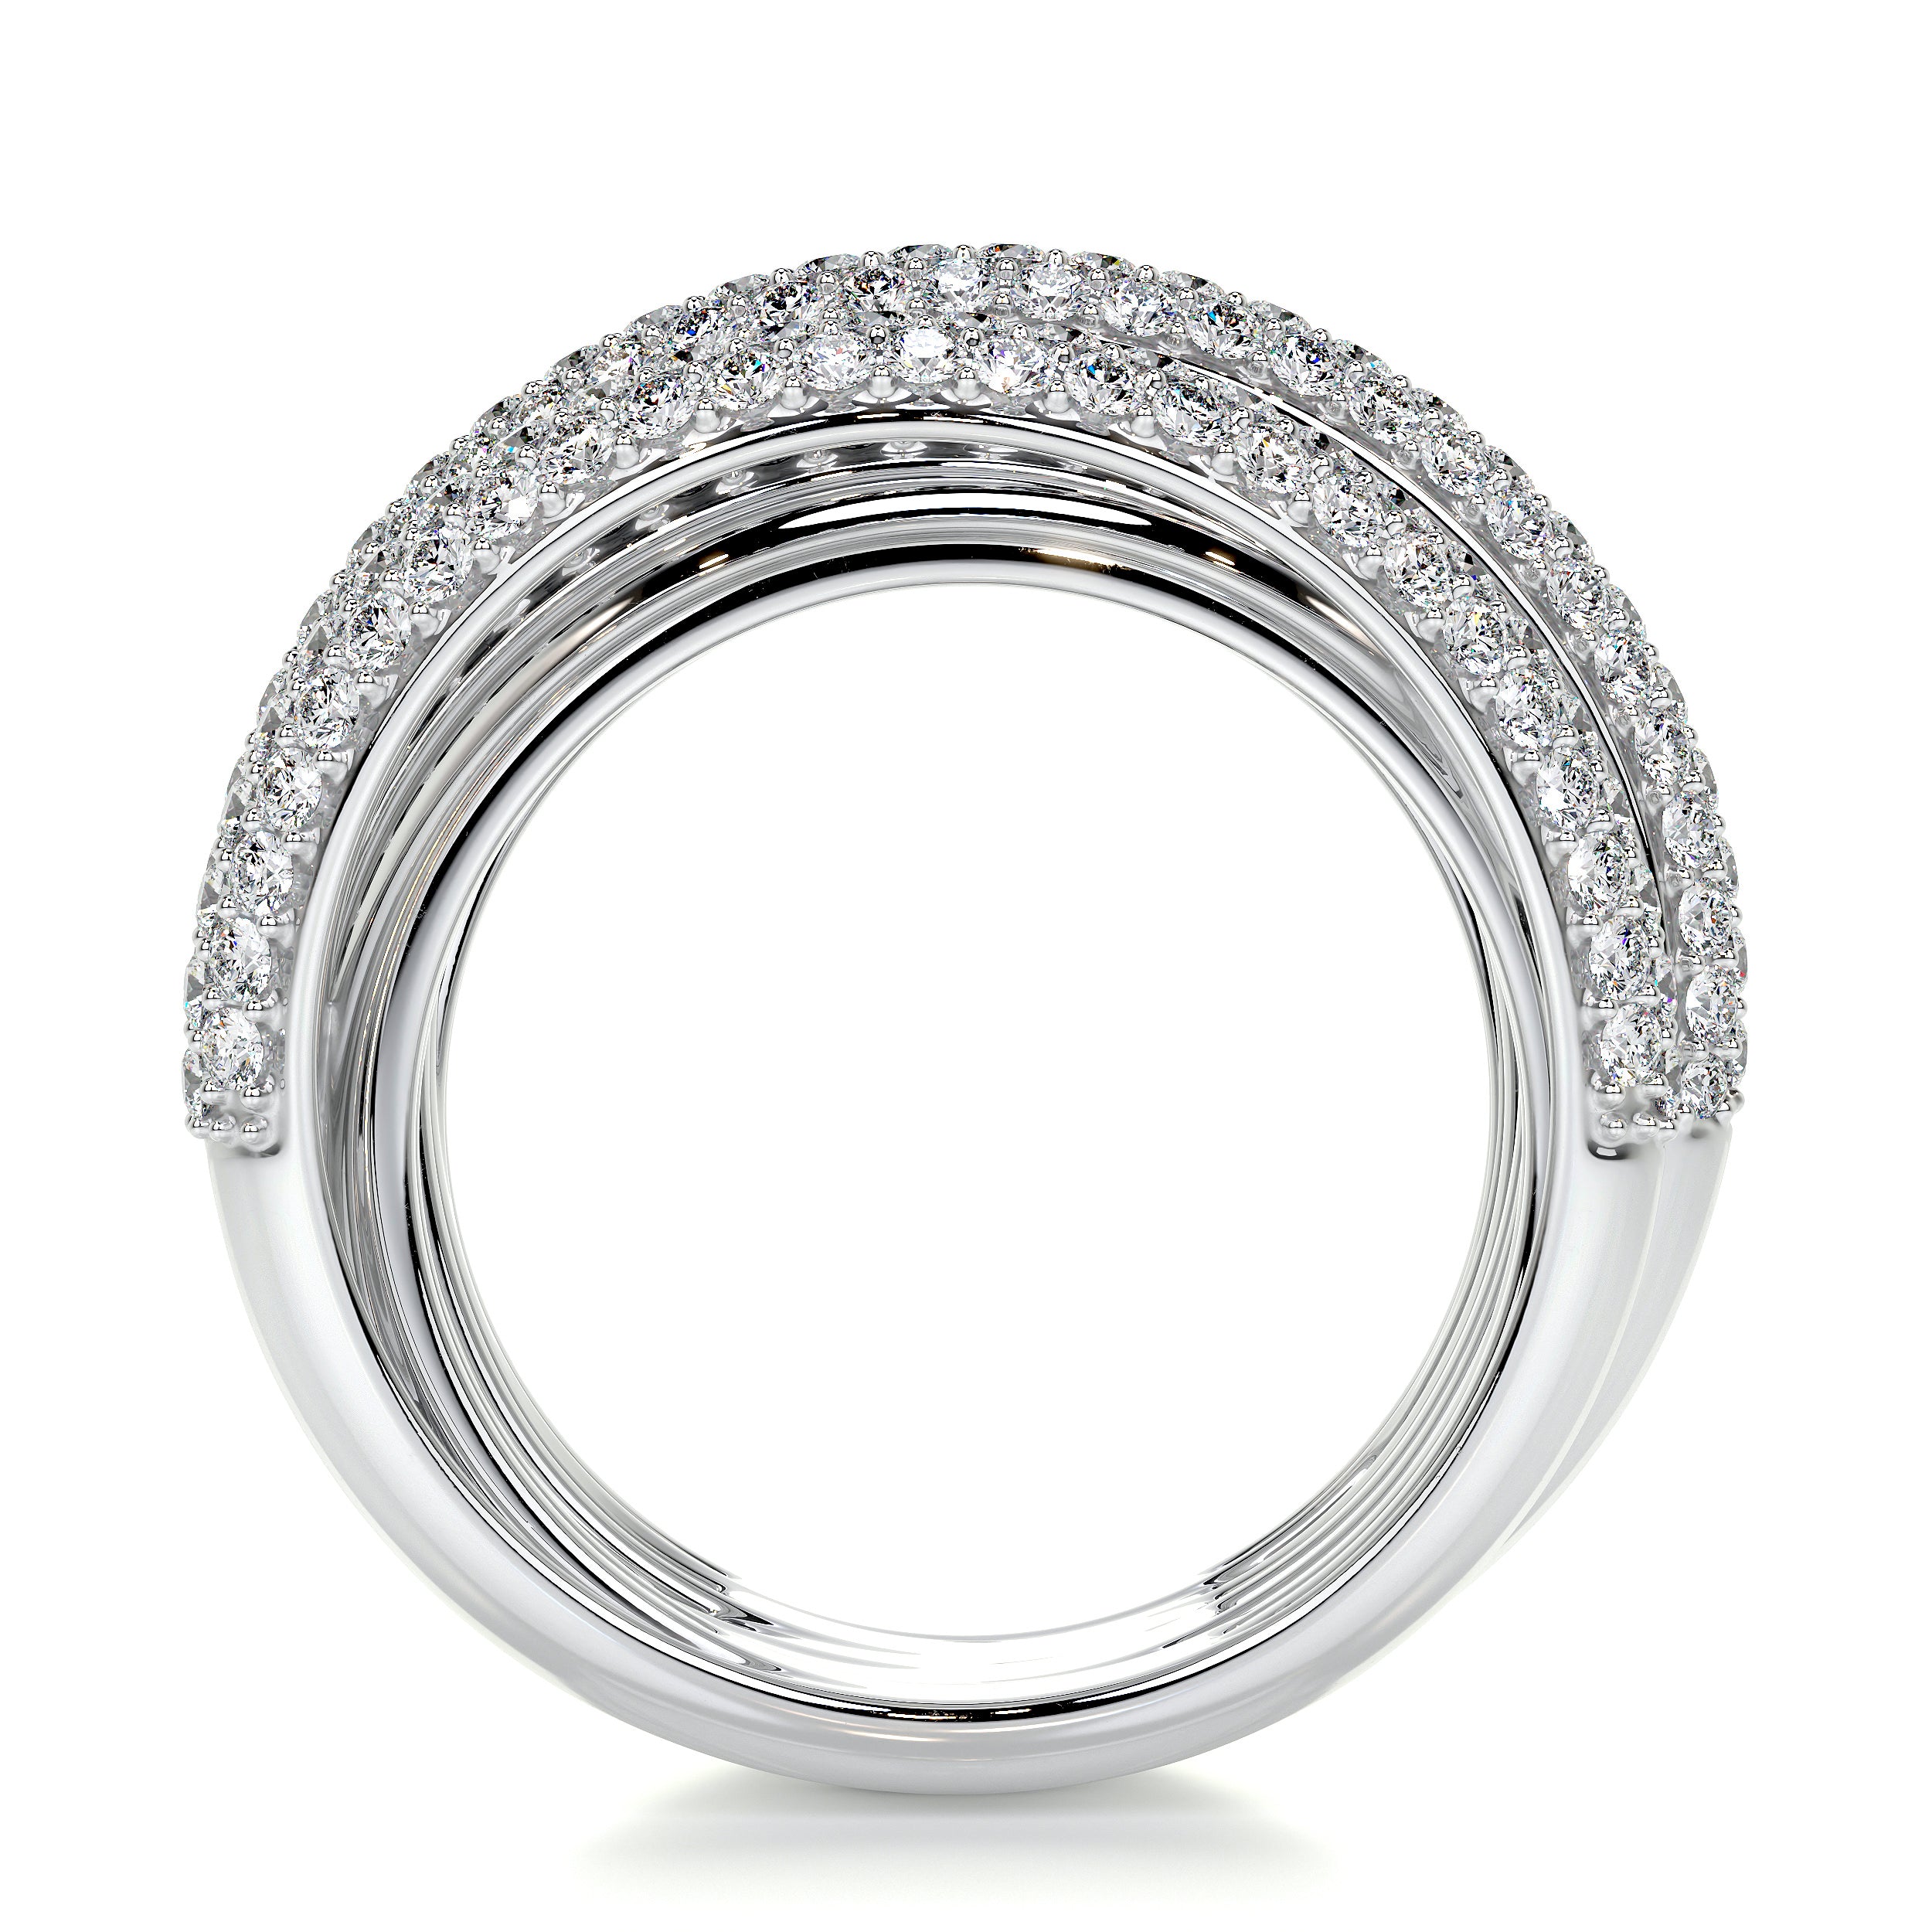 Aurora Black & White Lab Grown Diamond Wedding Ring   (3 Carat) -14K White Gold